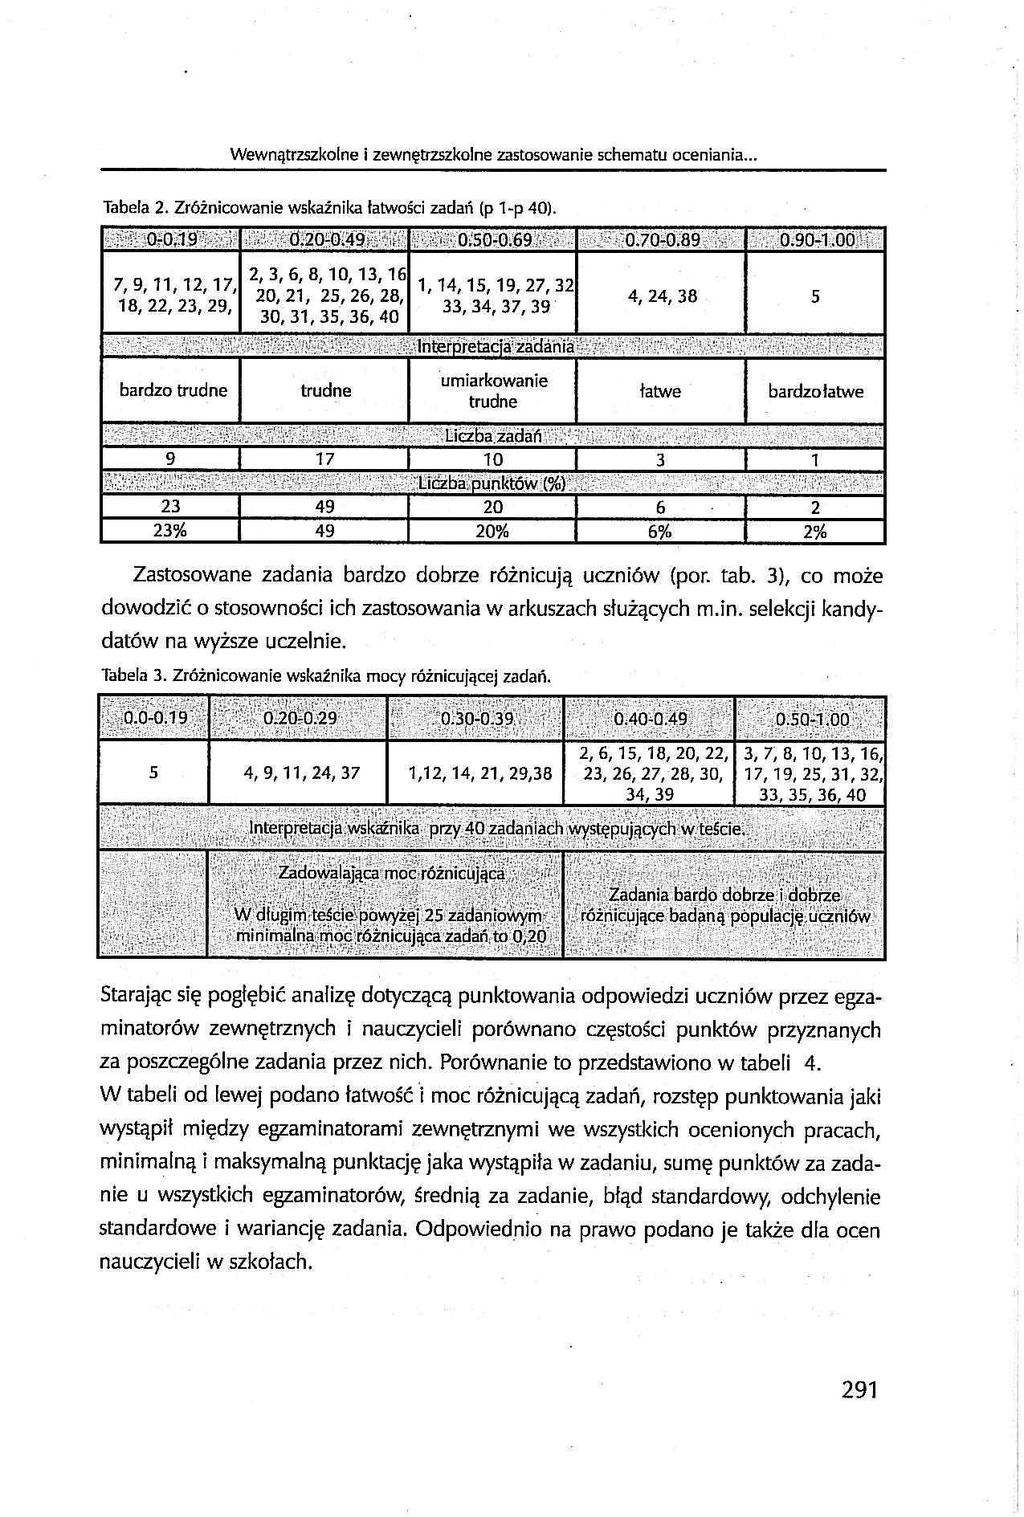 ' Wewnątrzszkolne i zewnętrzszkolne zastosowanie schematu oceniania... Tabela 2. Zróżnicowanie wskaźnika łatwości zadań (p 1-p 40). 7, 9, 11, 12, 17, 18, 22, 23, 29, bardzo trudne 0.200.49 V 0.50-0.